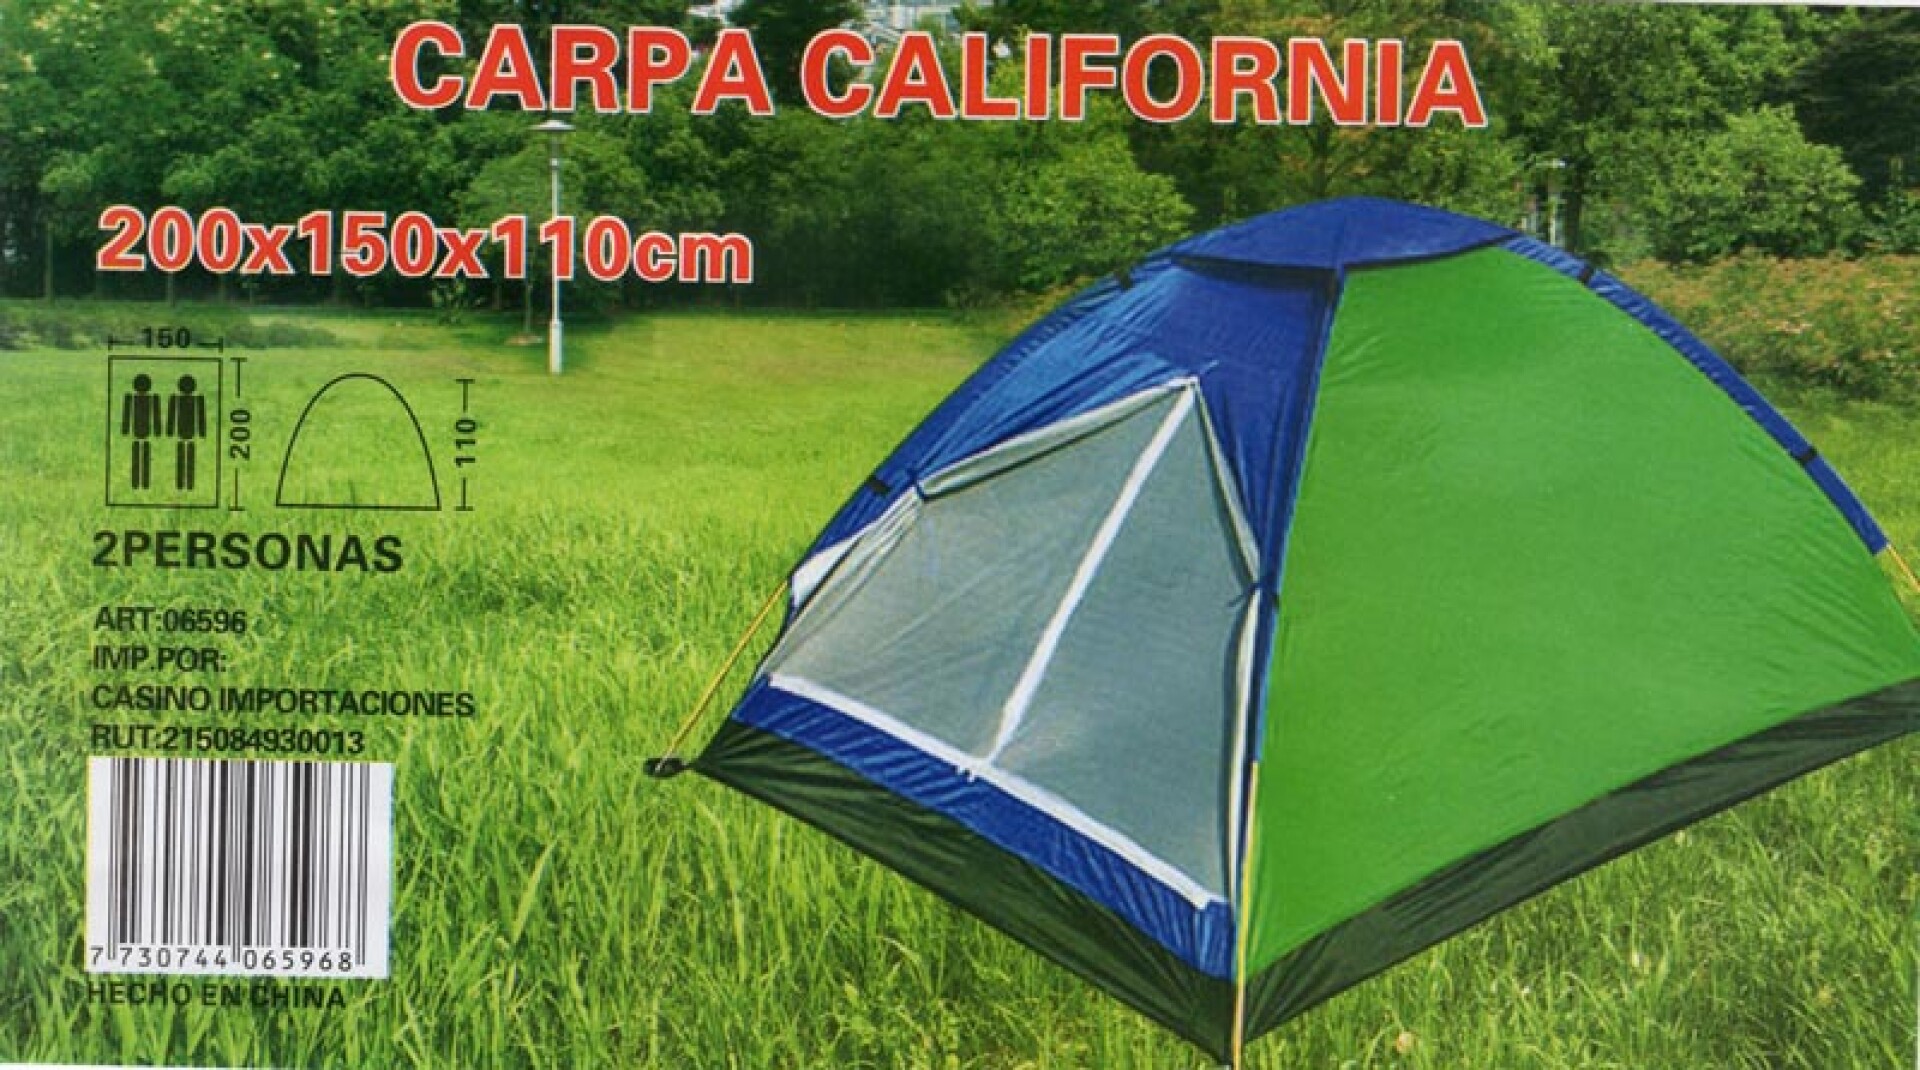 CARPA CALIFORNIA PARA 2 PERSONAS 7806 